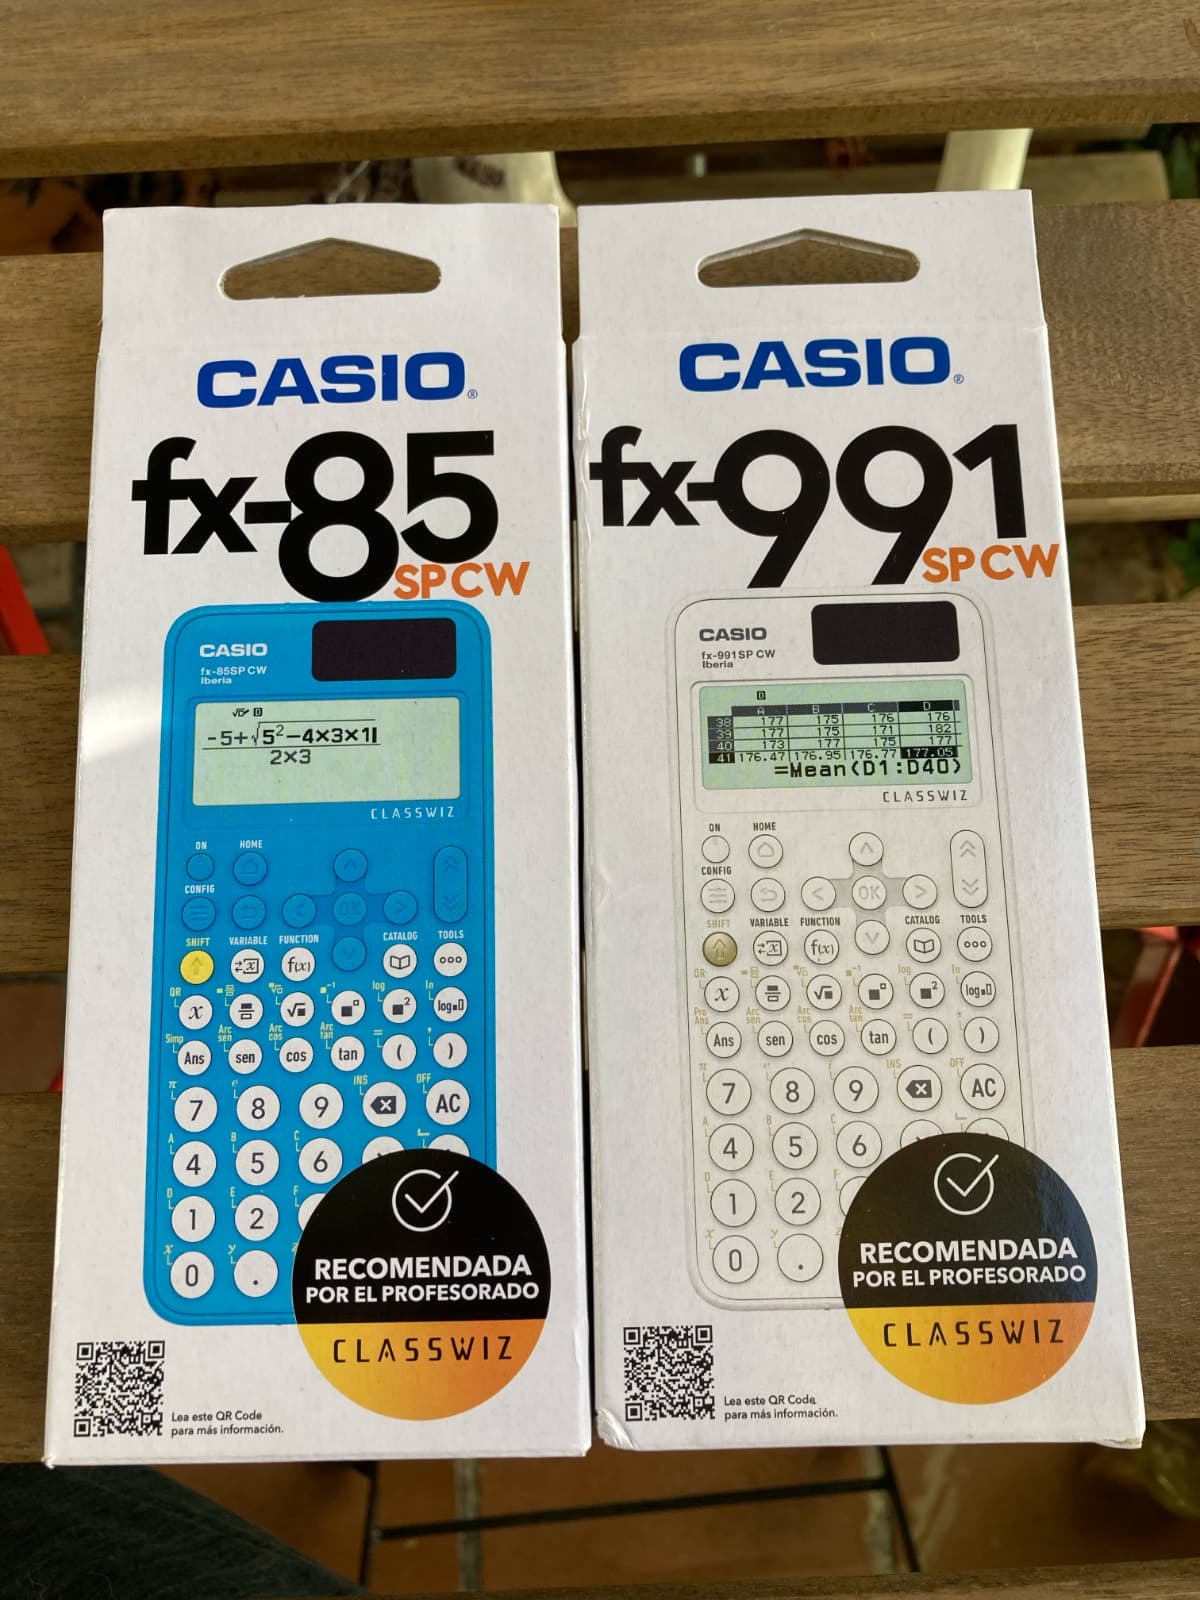 Casio fx-85SP CW y Casio fx-991SP CW: Opinión y análisis de las nuevas calculadoras Classwiz